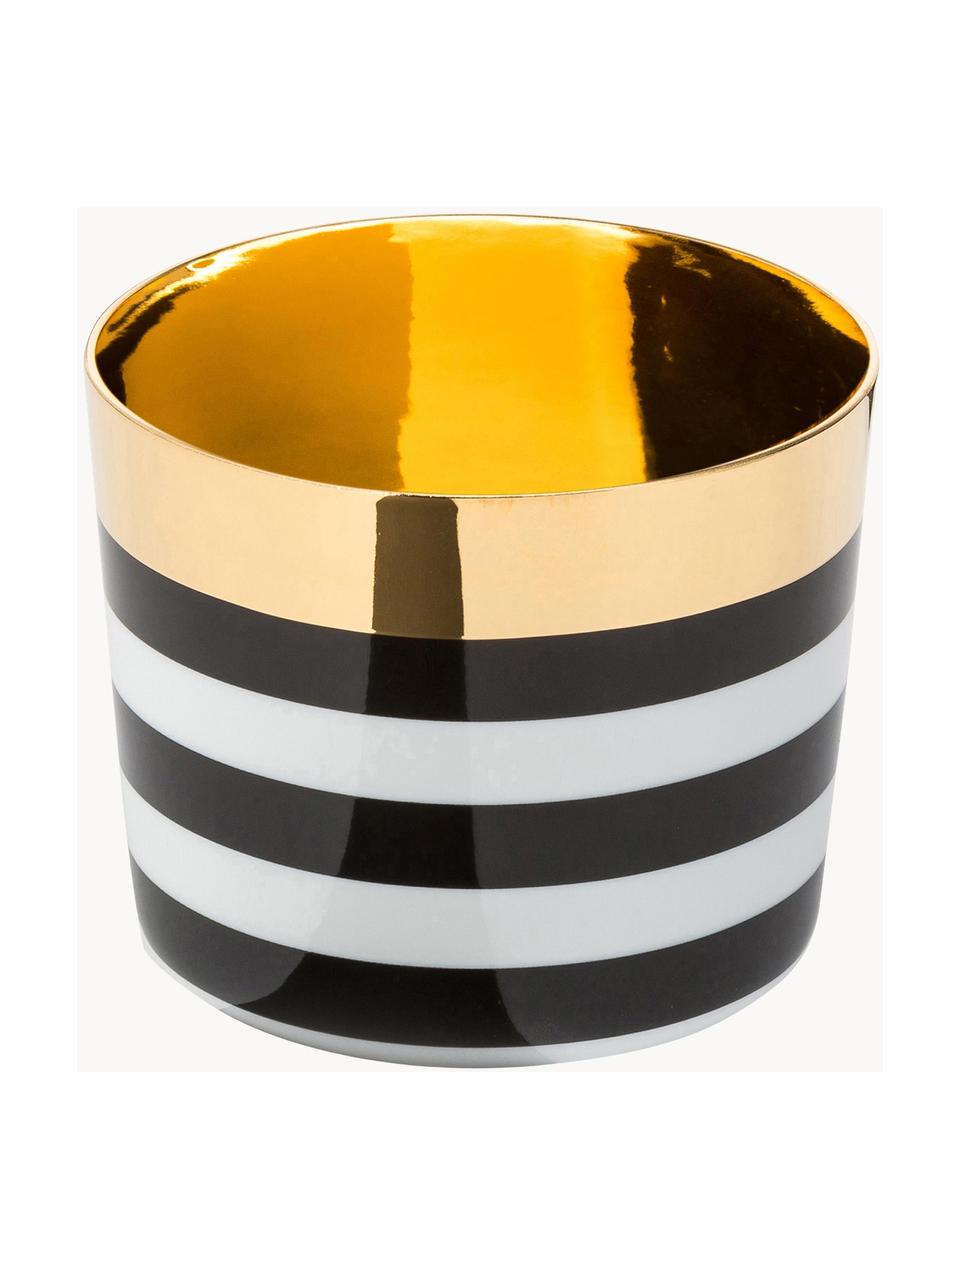 Pozłacany kubek do szampana z porcelany Sip of Gold, Czarny, biały, złoty, Ø 9 x W 7 cm, 300 ml